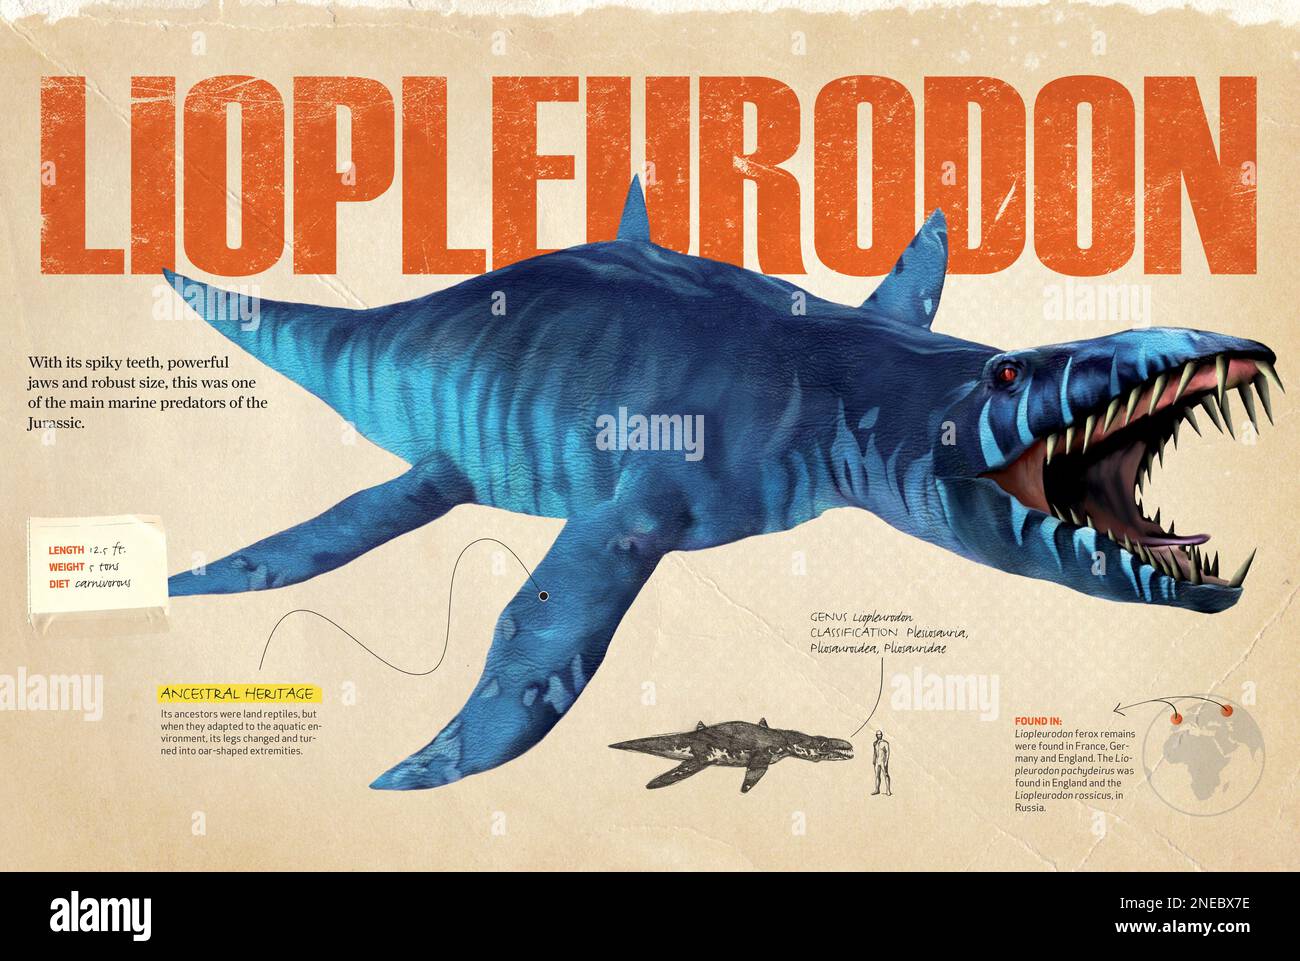 Infographies sur le liopleurodon, prédateur marin de la période jurassique. [QuarkXPress (.qxp); 4842x3248]. Banque D'Images